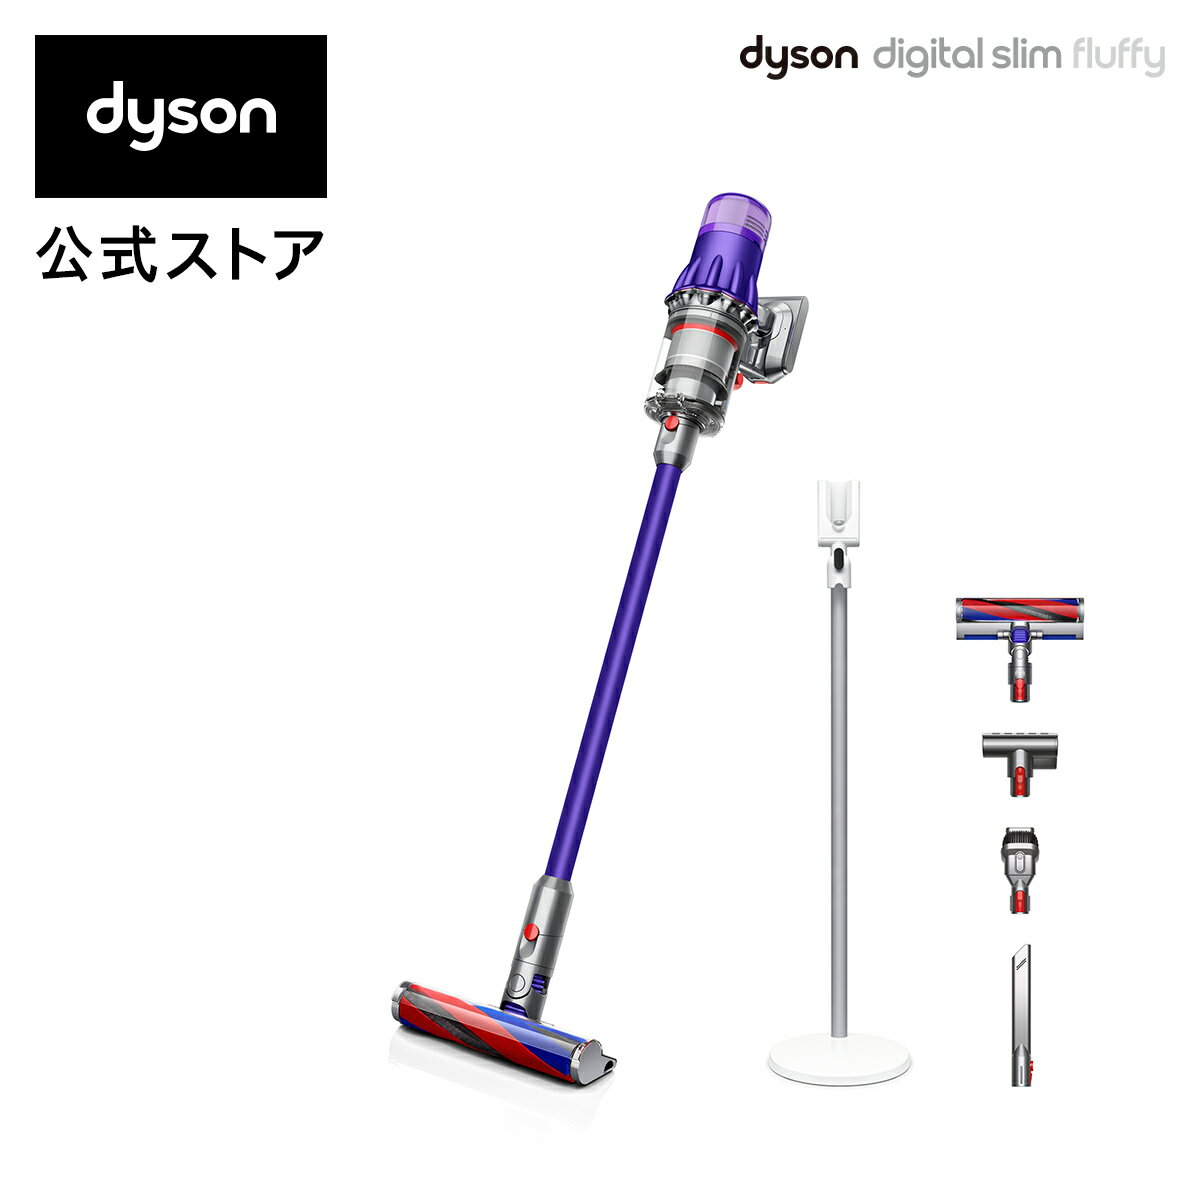 【軽量でパワフル】ダイソン Dyson Digital Slim Fluffy サイクロン式 コードレス掃除機 dyson SV18FF 2020年モデル